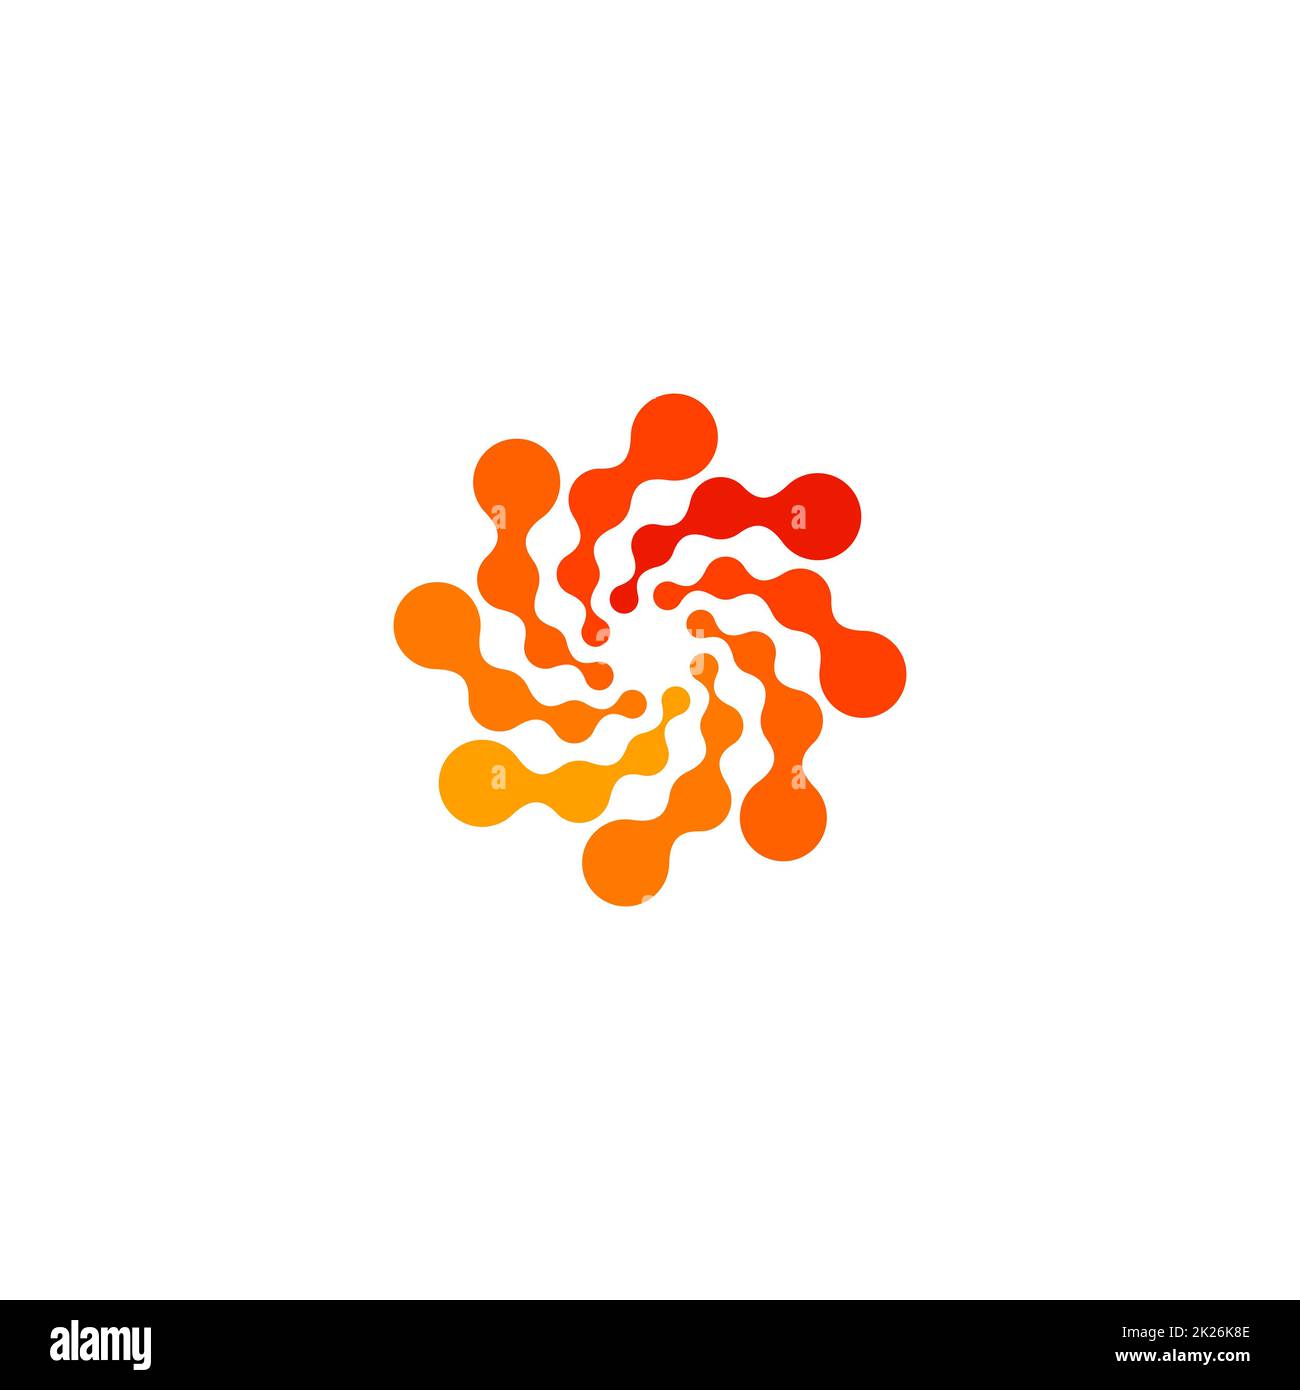 Isoliertes, abstraktes, rundes, orangefarbenes Logo, gepunktetes, stilisiertes Sonnenlogo auf weißem Hintergrund, wirbelförmige Vektordarstellung Stockfoto